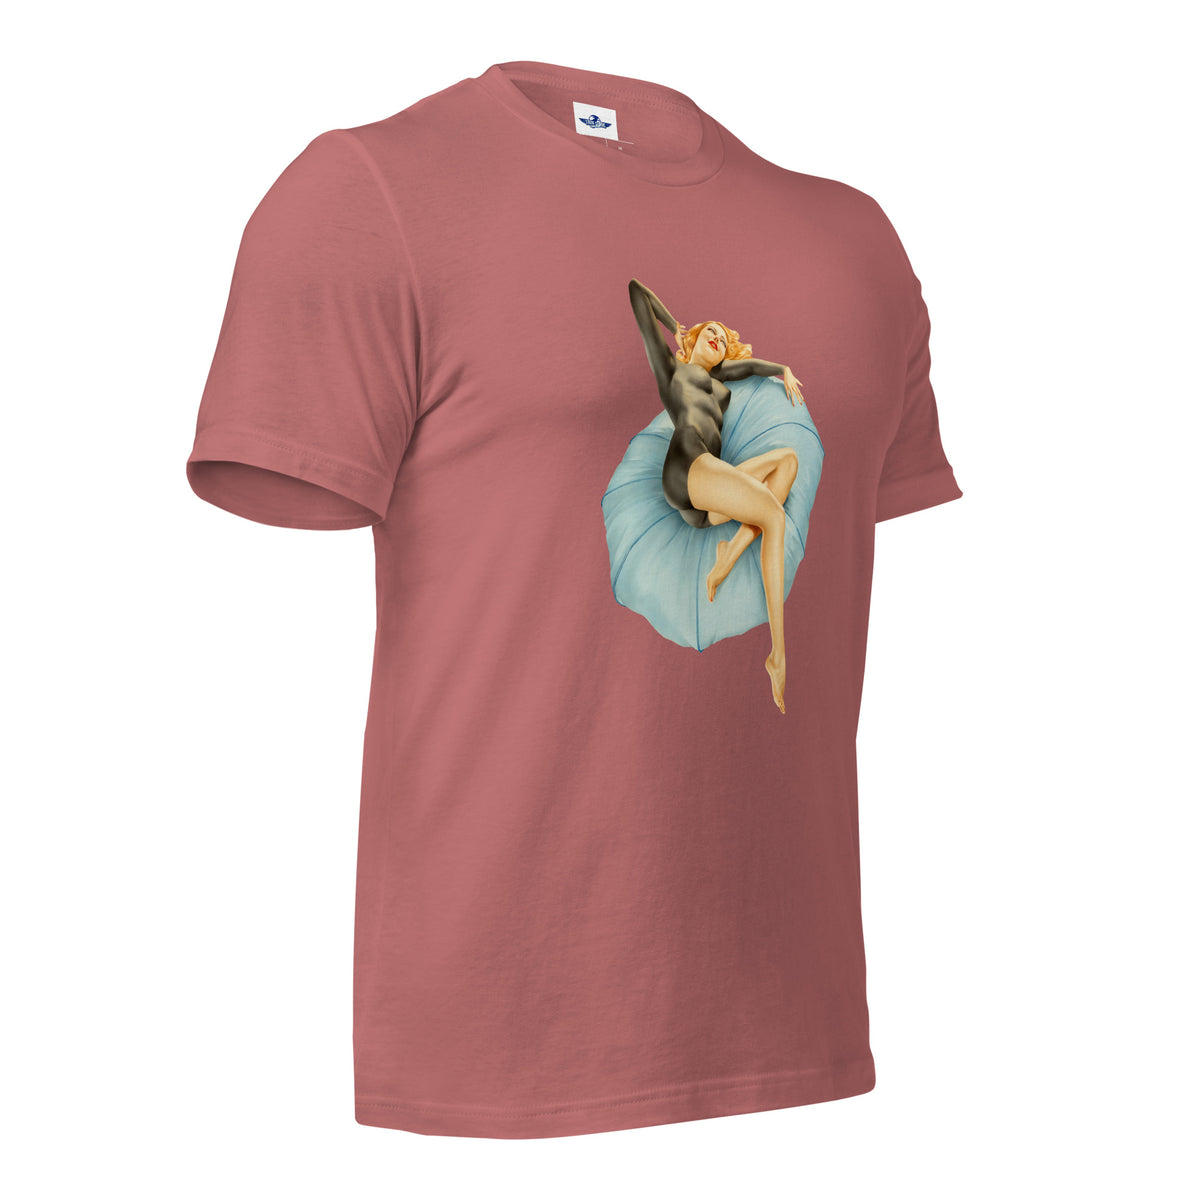 Retro Cam Girl Men's t-shirt